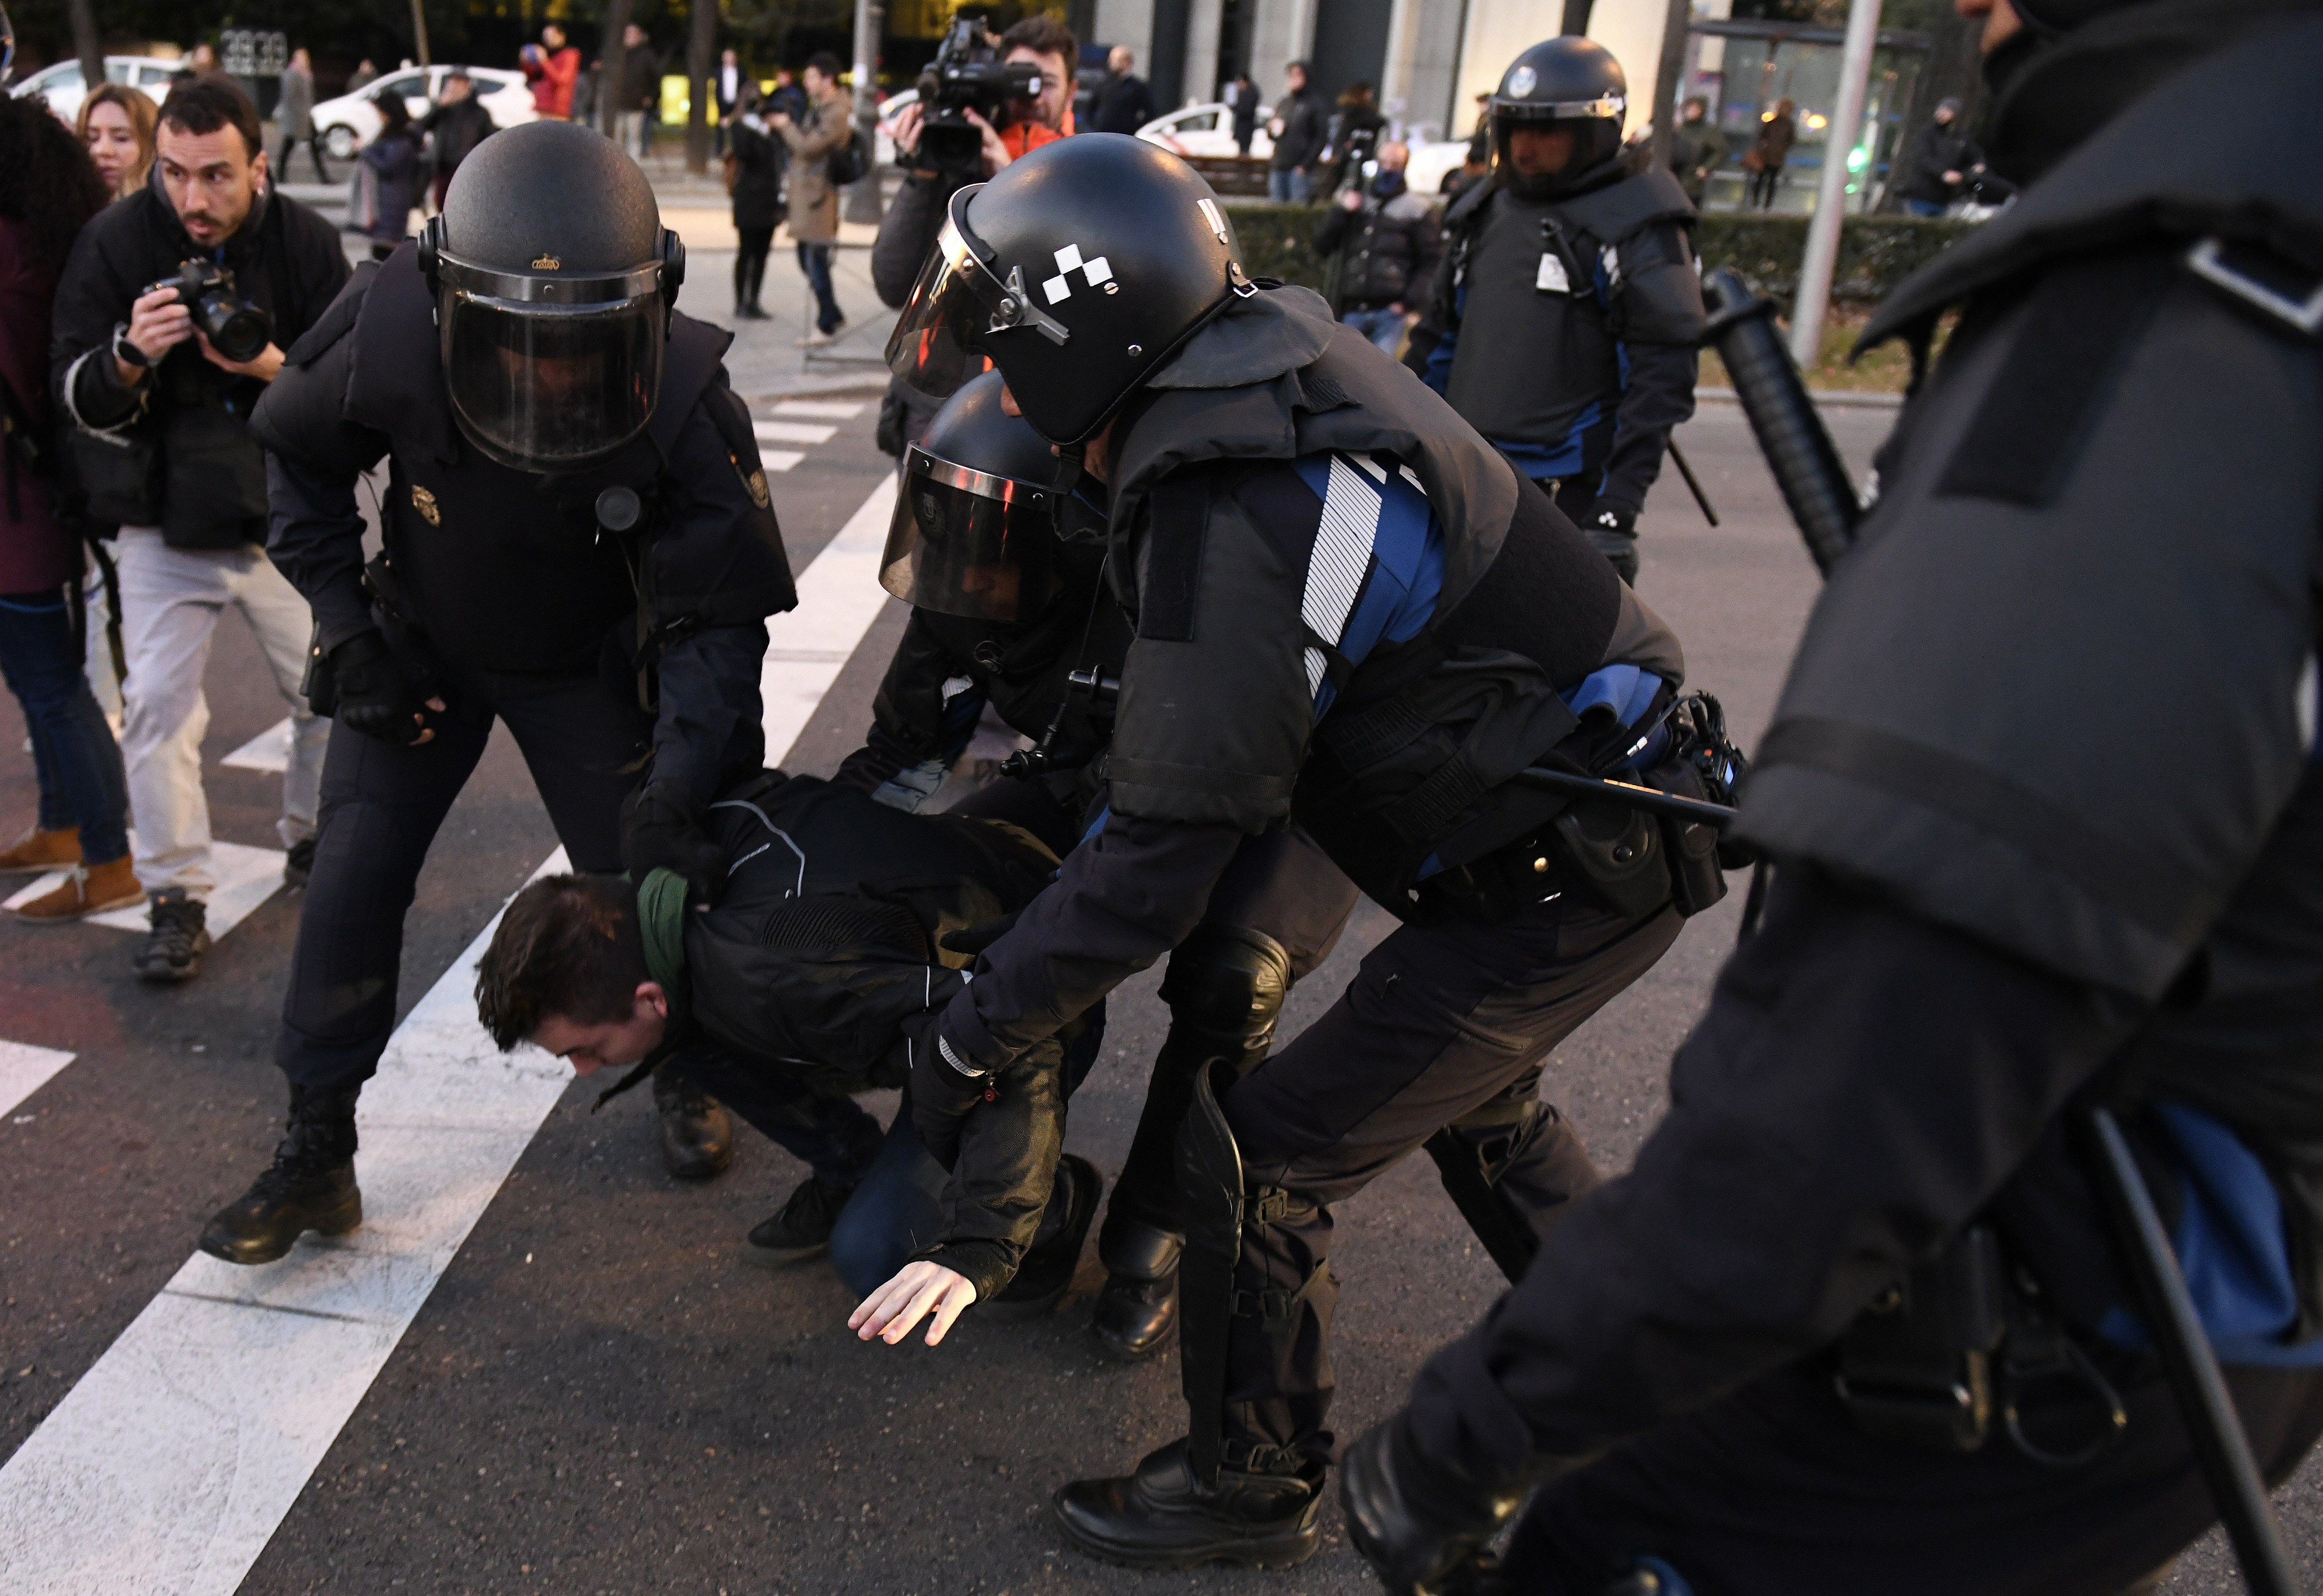 Antiavalots desallotgen els taxistes de la Castellana de Madrid